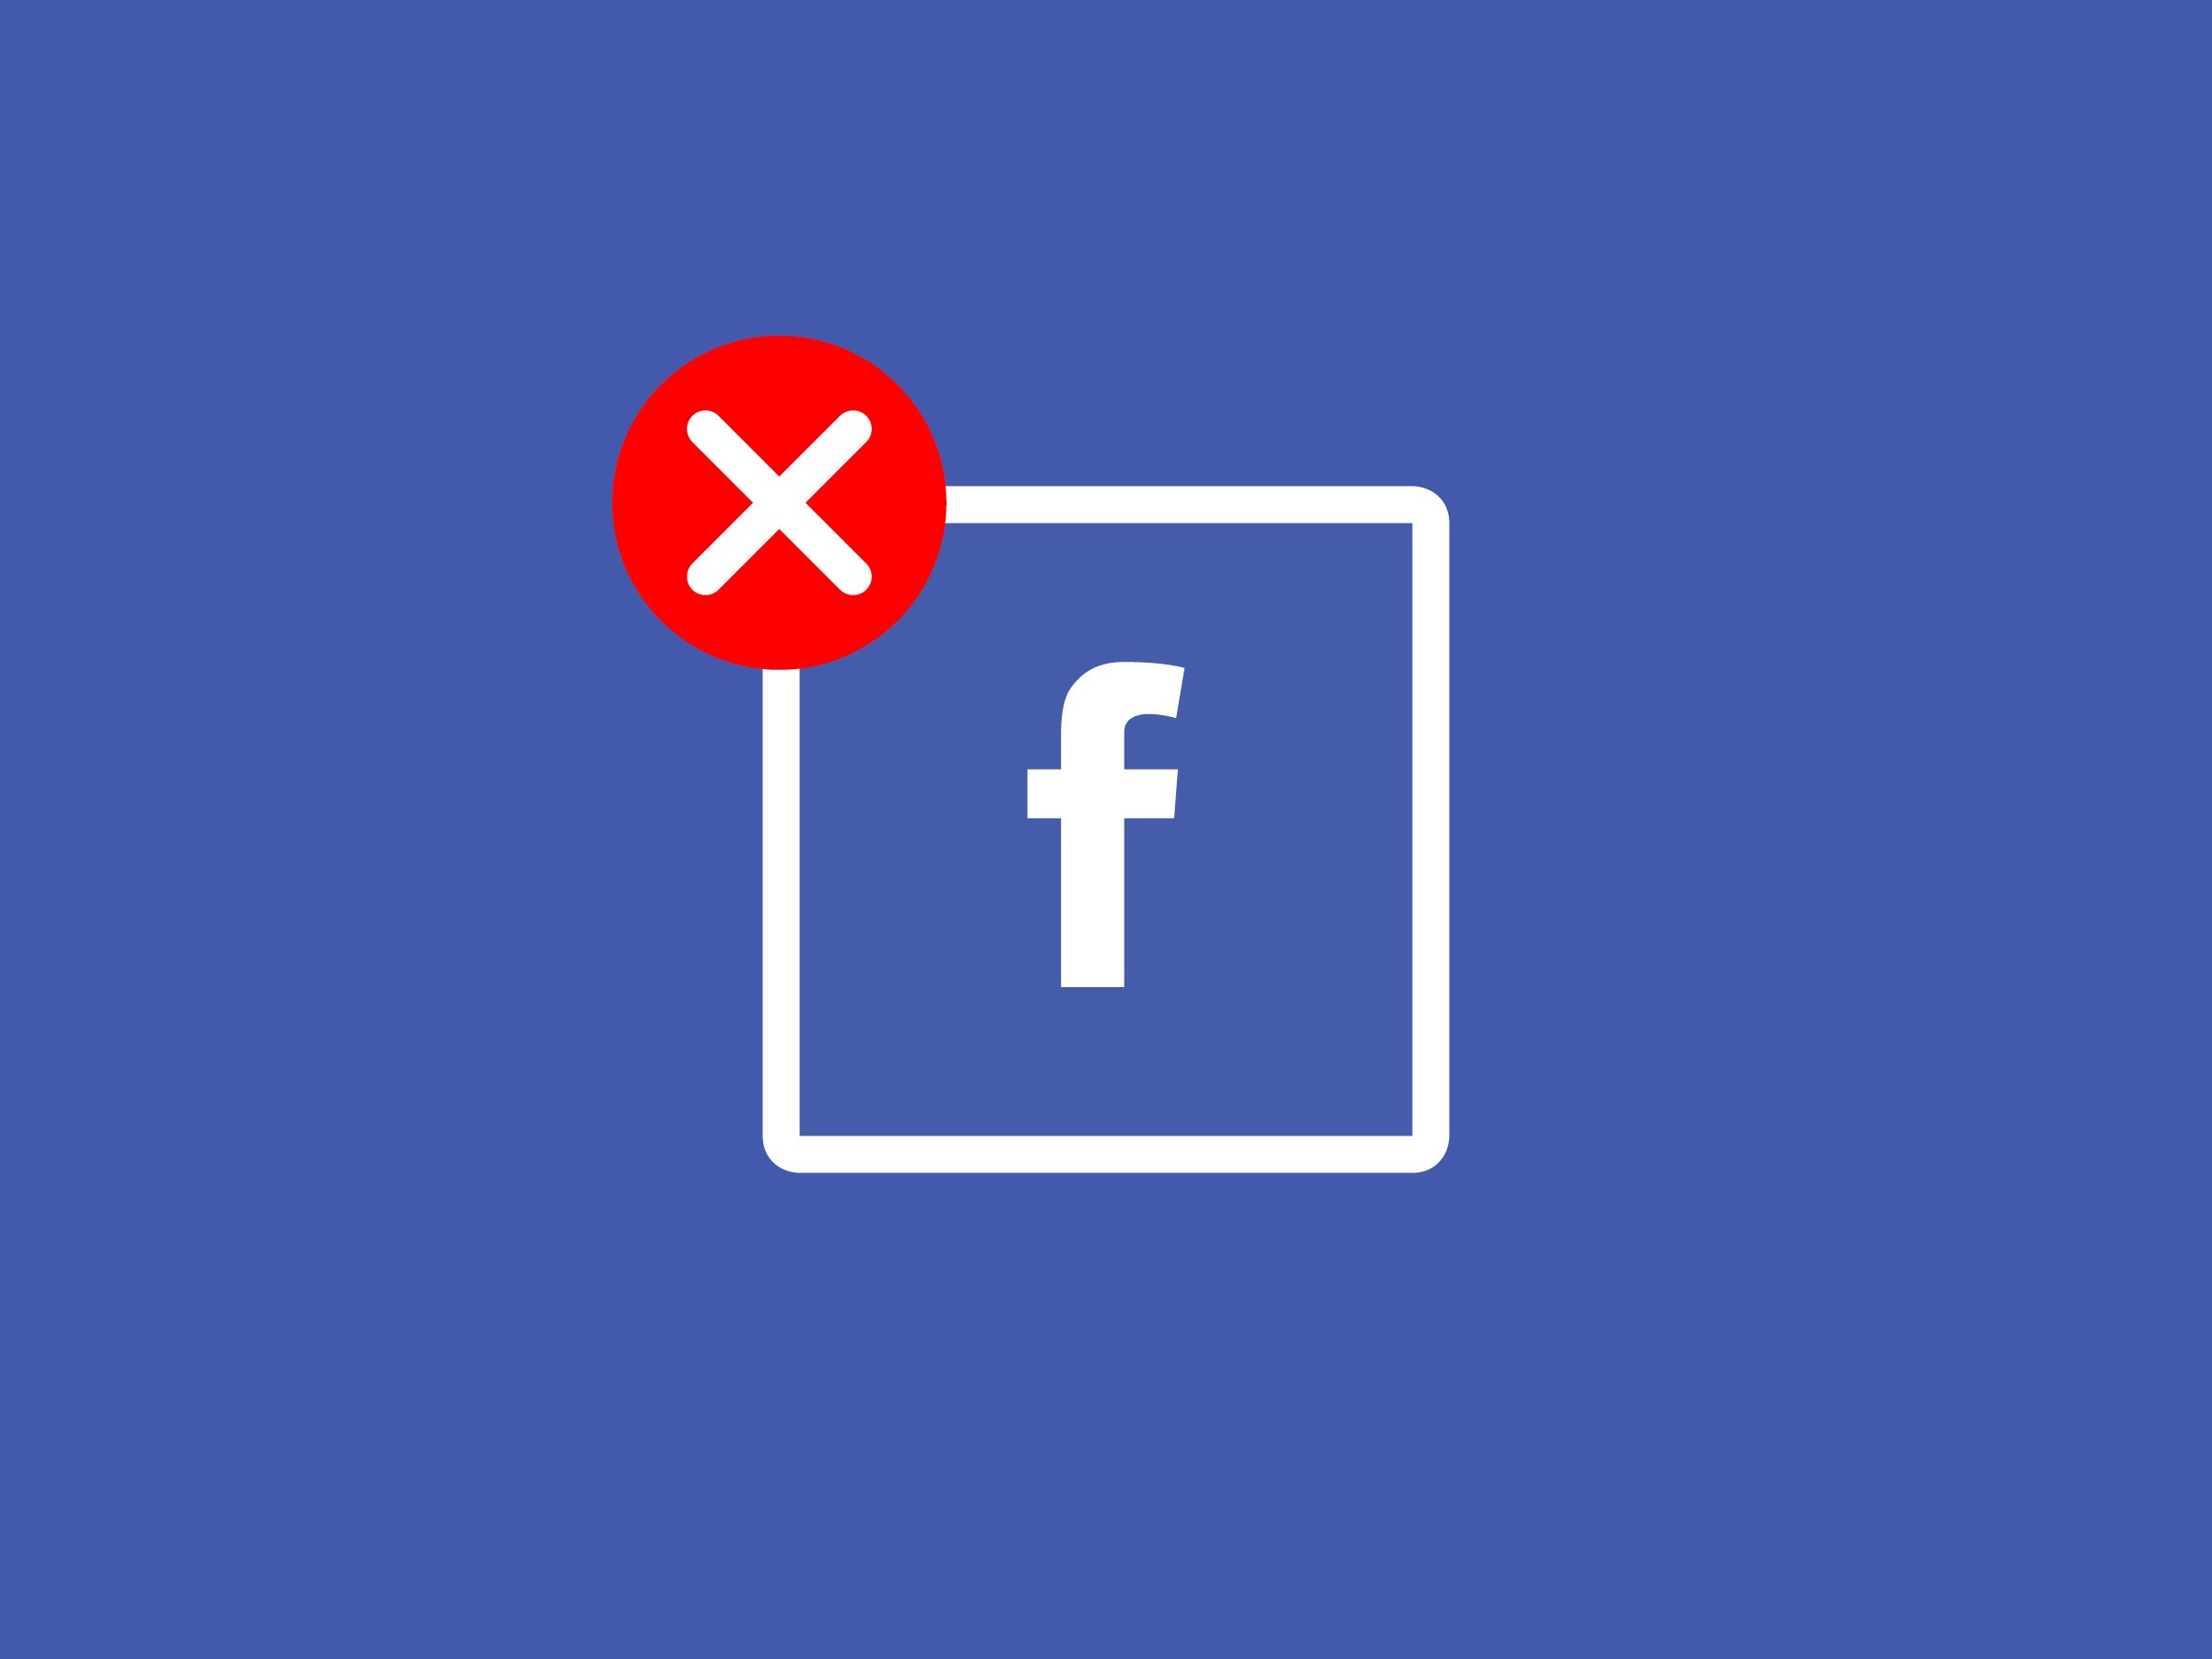 Αντιεμβολιαστικό κίνημα Facebook εκστρατεία: “Μάχη” κατά των fake news